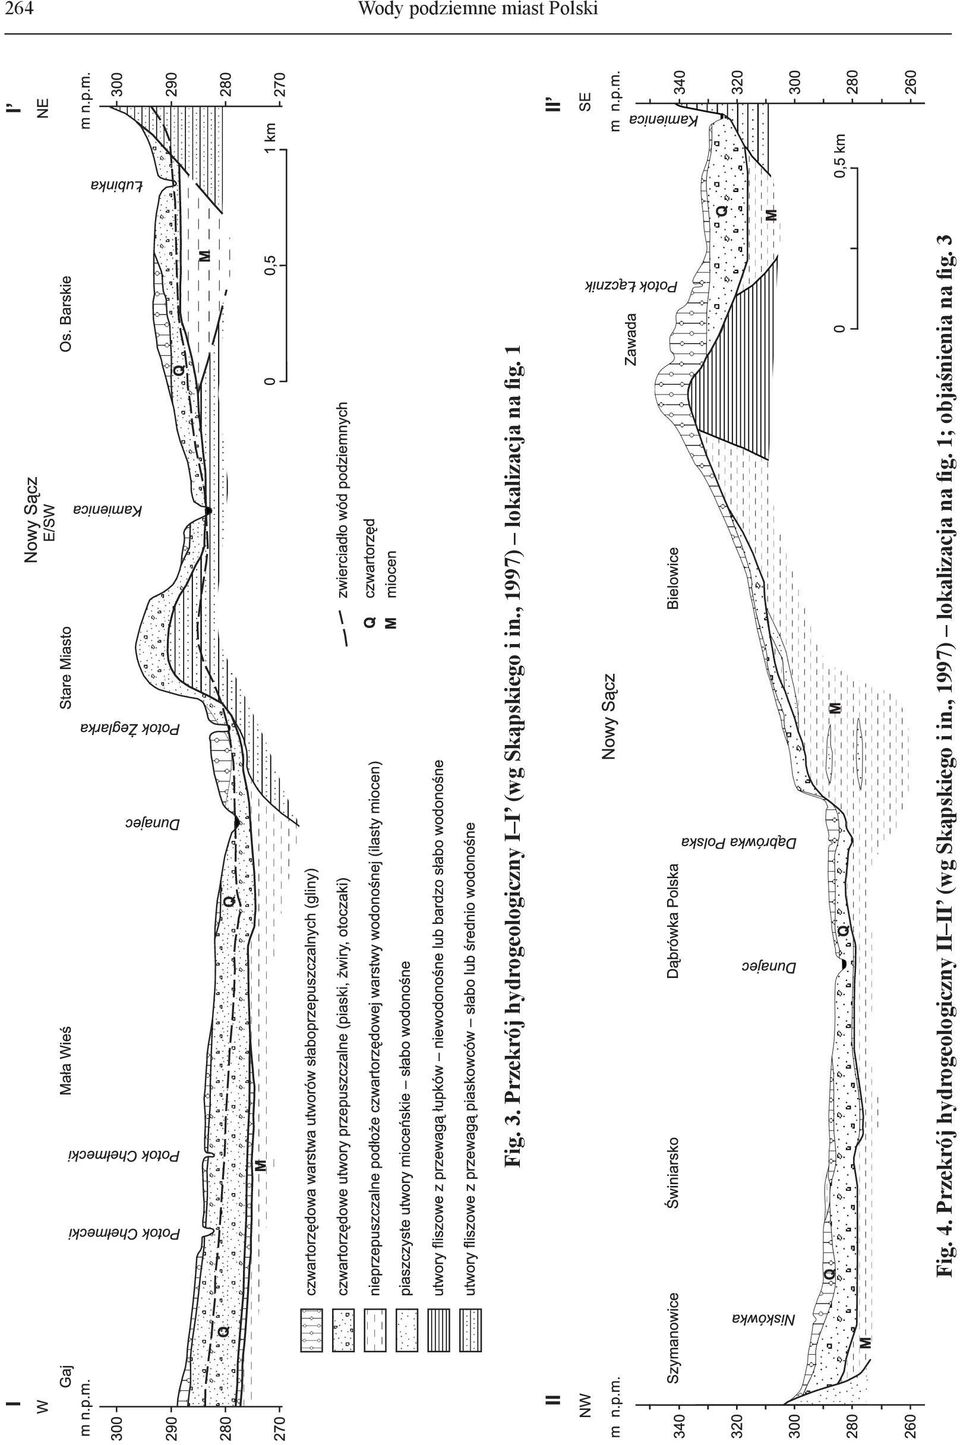 , 1997) lokalizacja na fig. 1 Fig. 4.